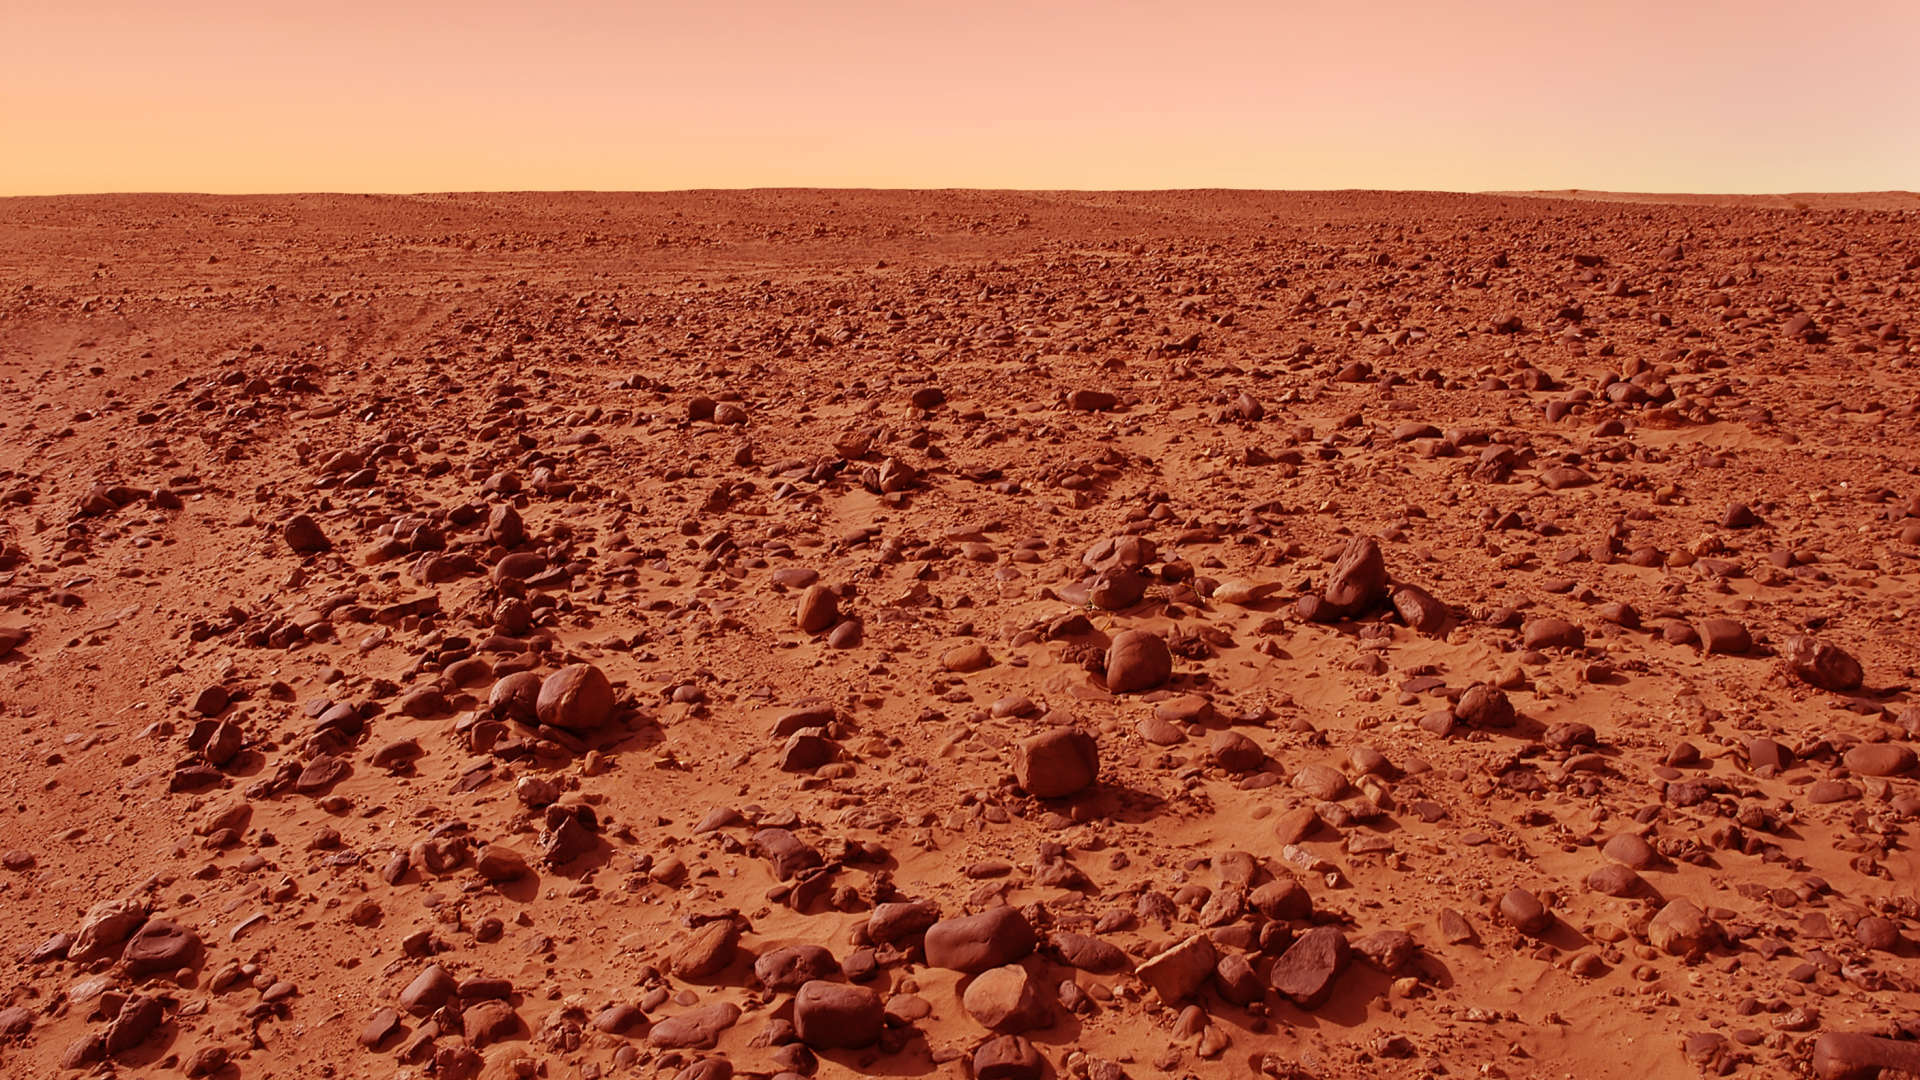 Quattro persone saranno intrappolate nello spazio che simula Marte come parte di una missione della NASA